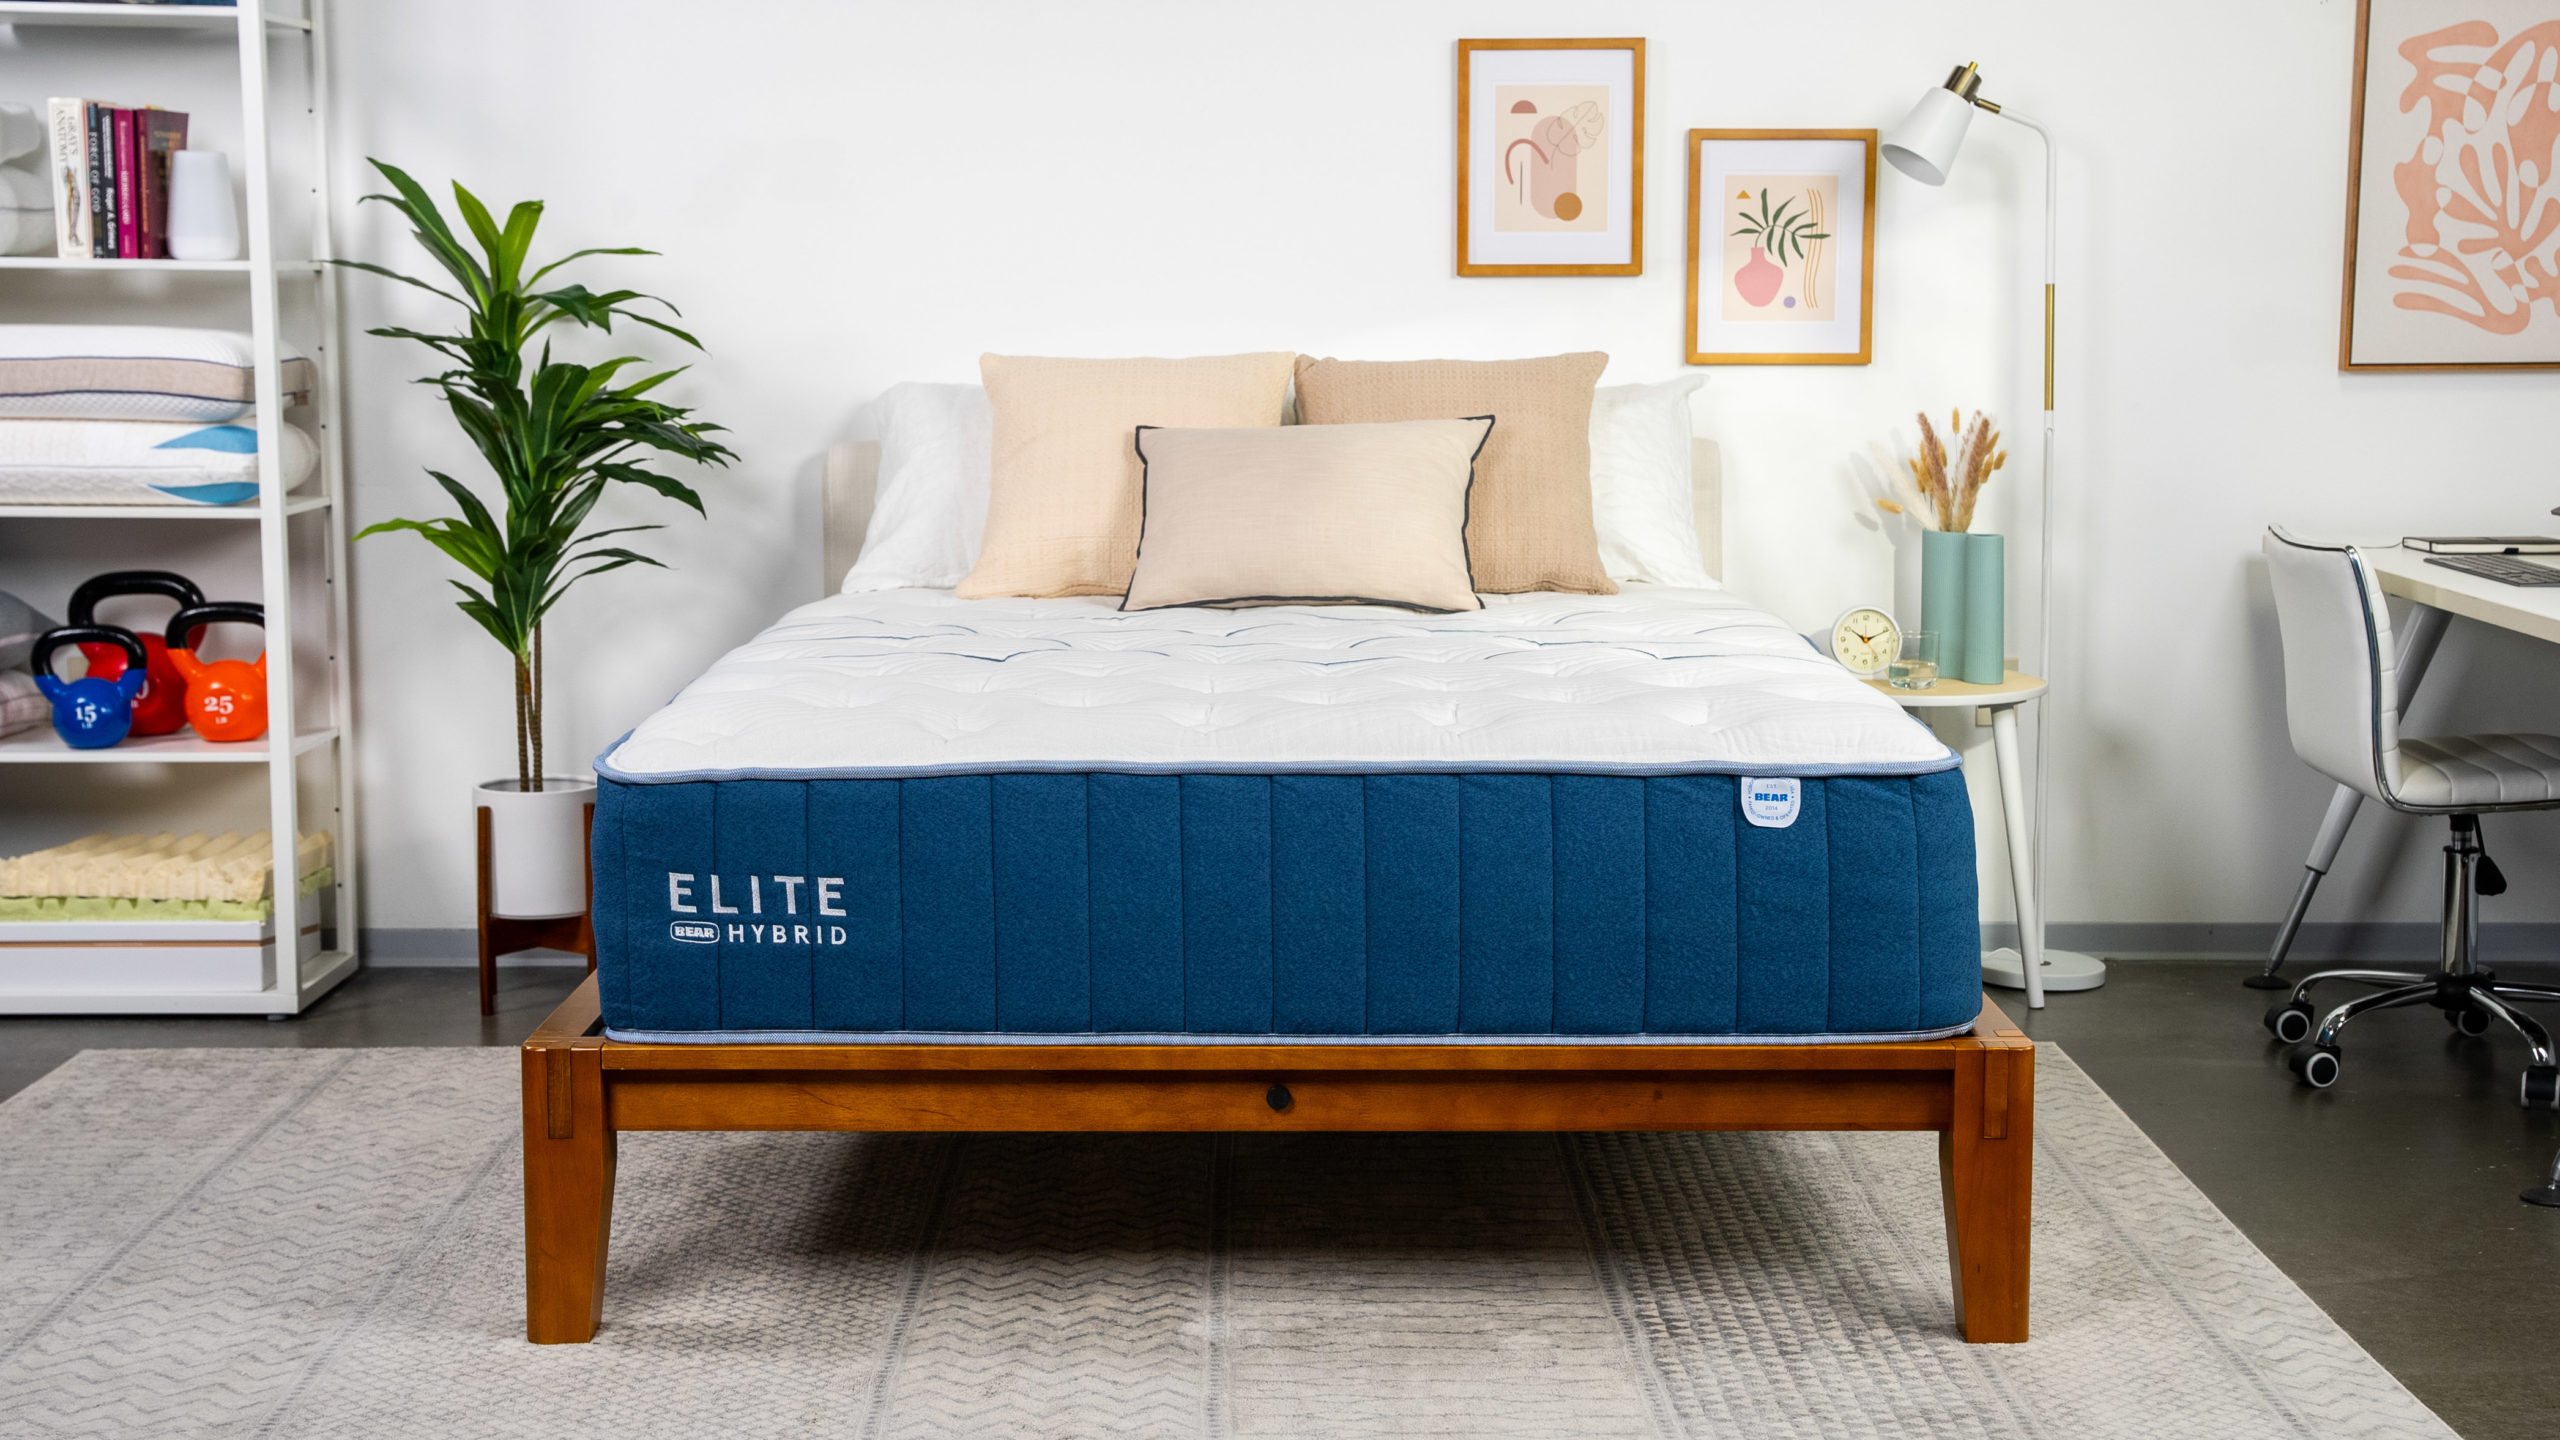 bear elite hybrid mattress review